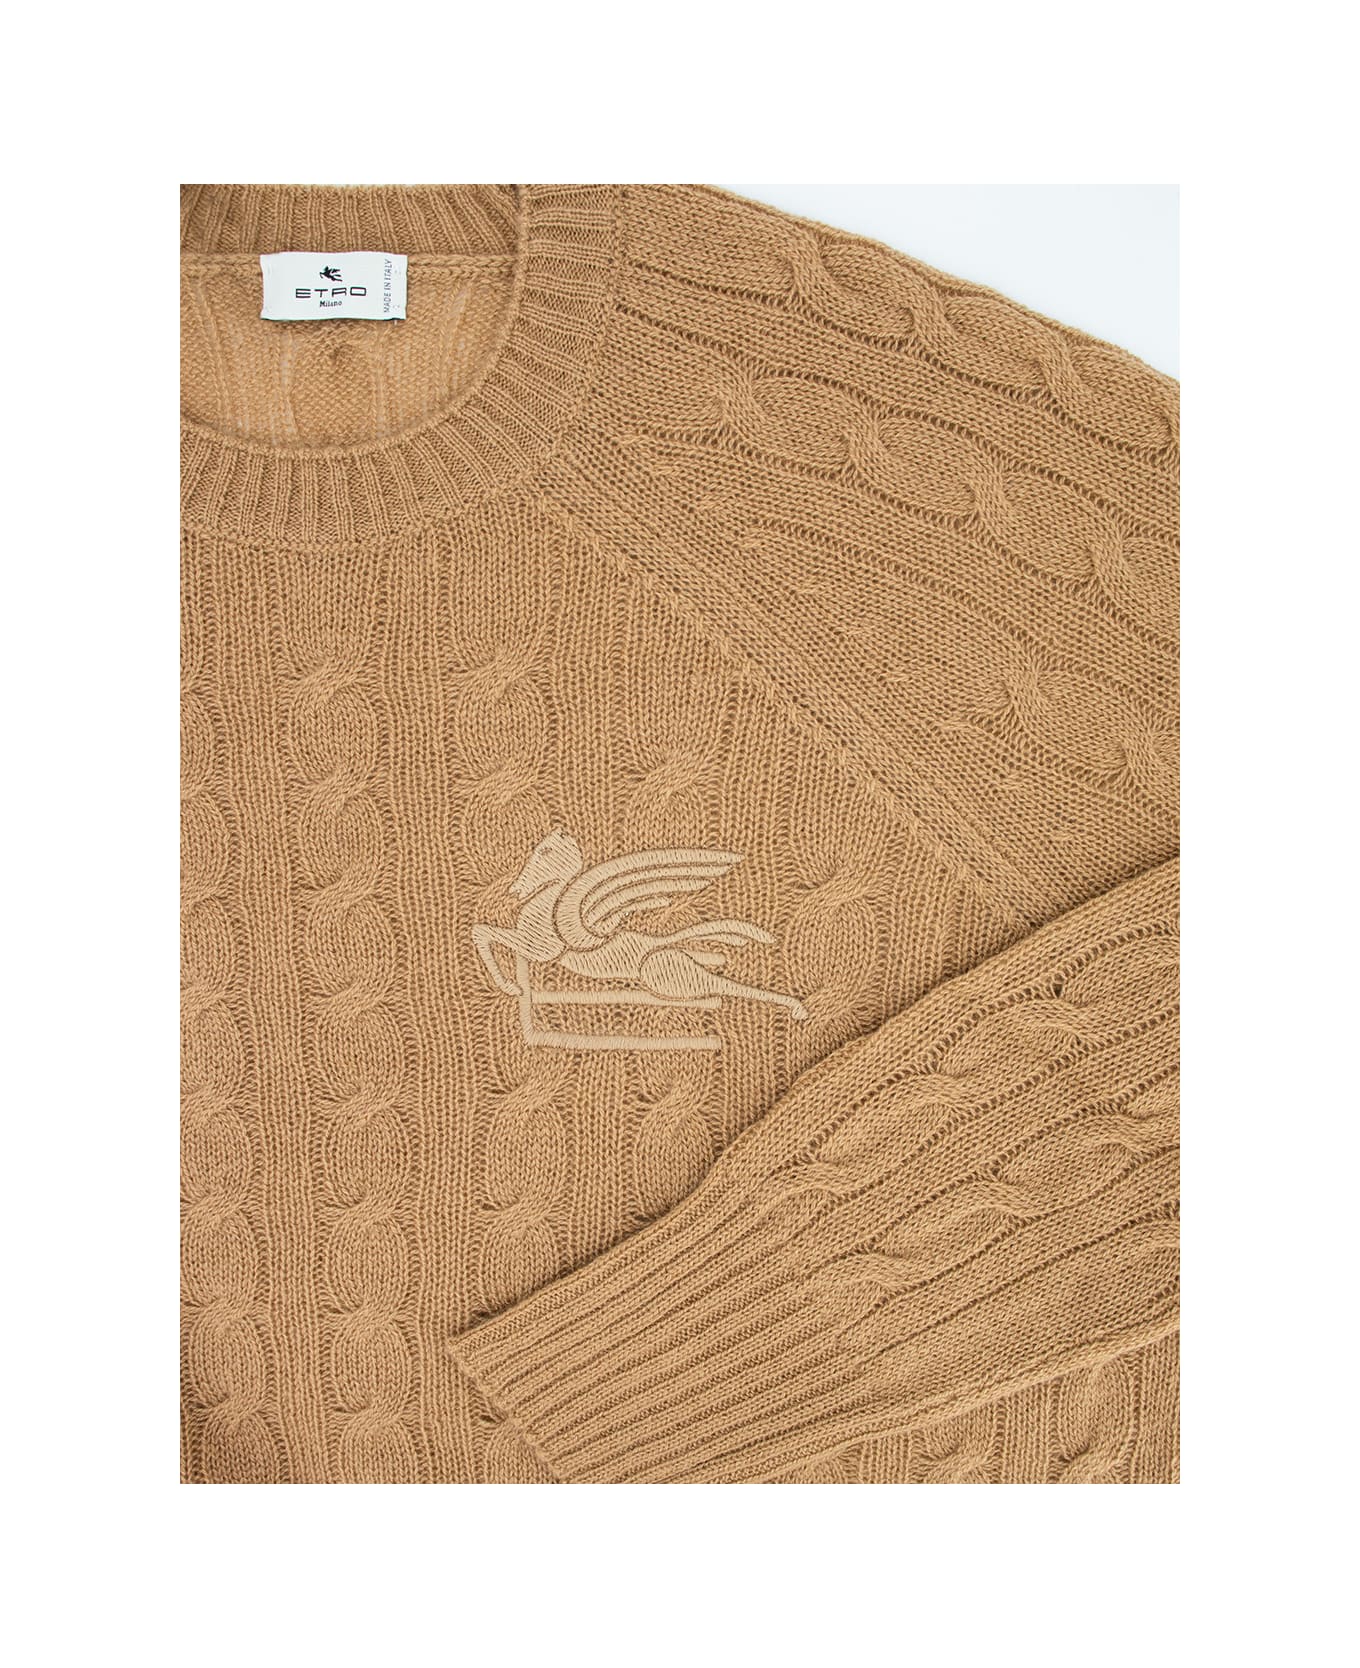 Etro Sweater - BEIGE